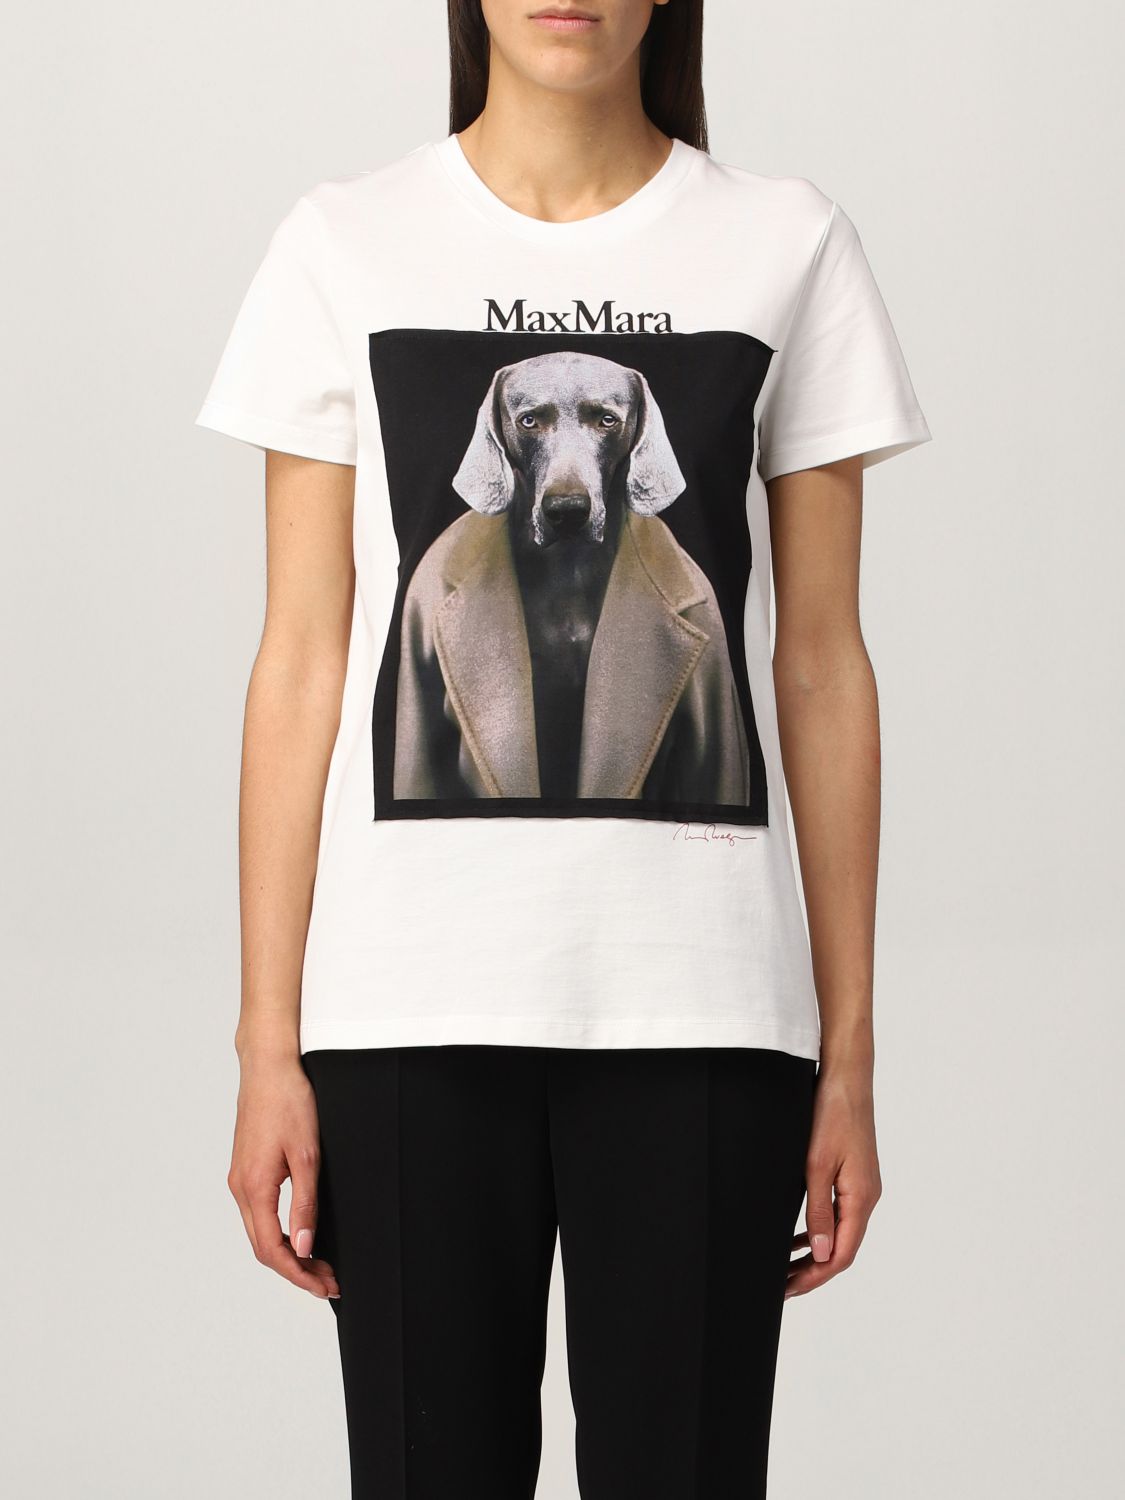 Max Mara dog tシャツ | www.jarussi.com.br